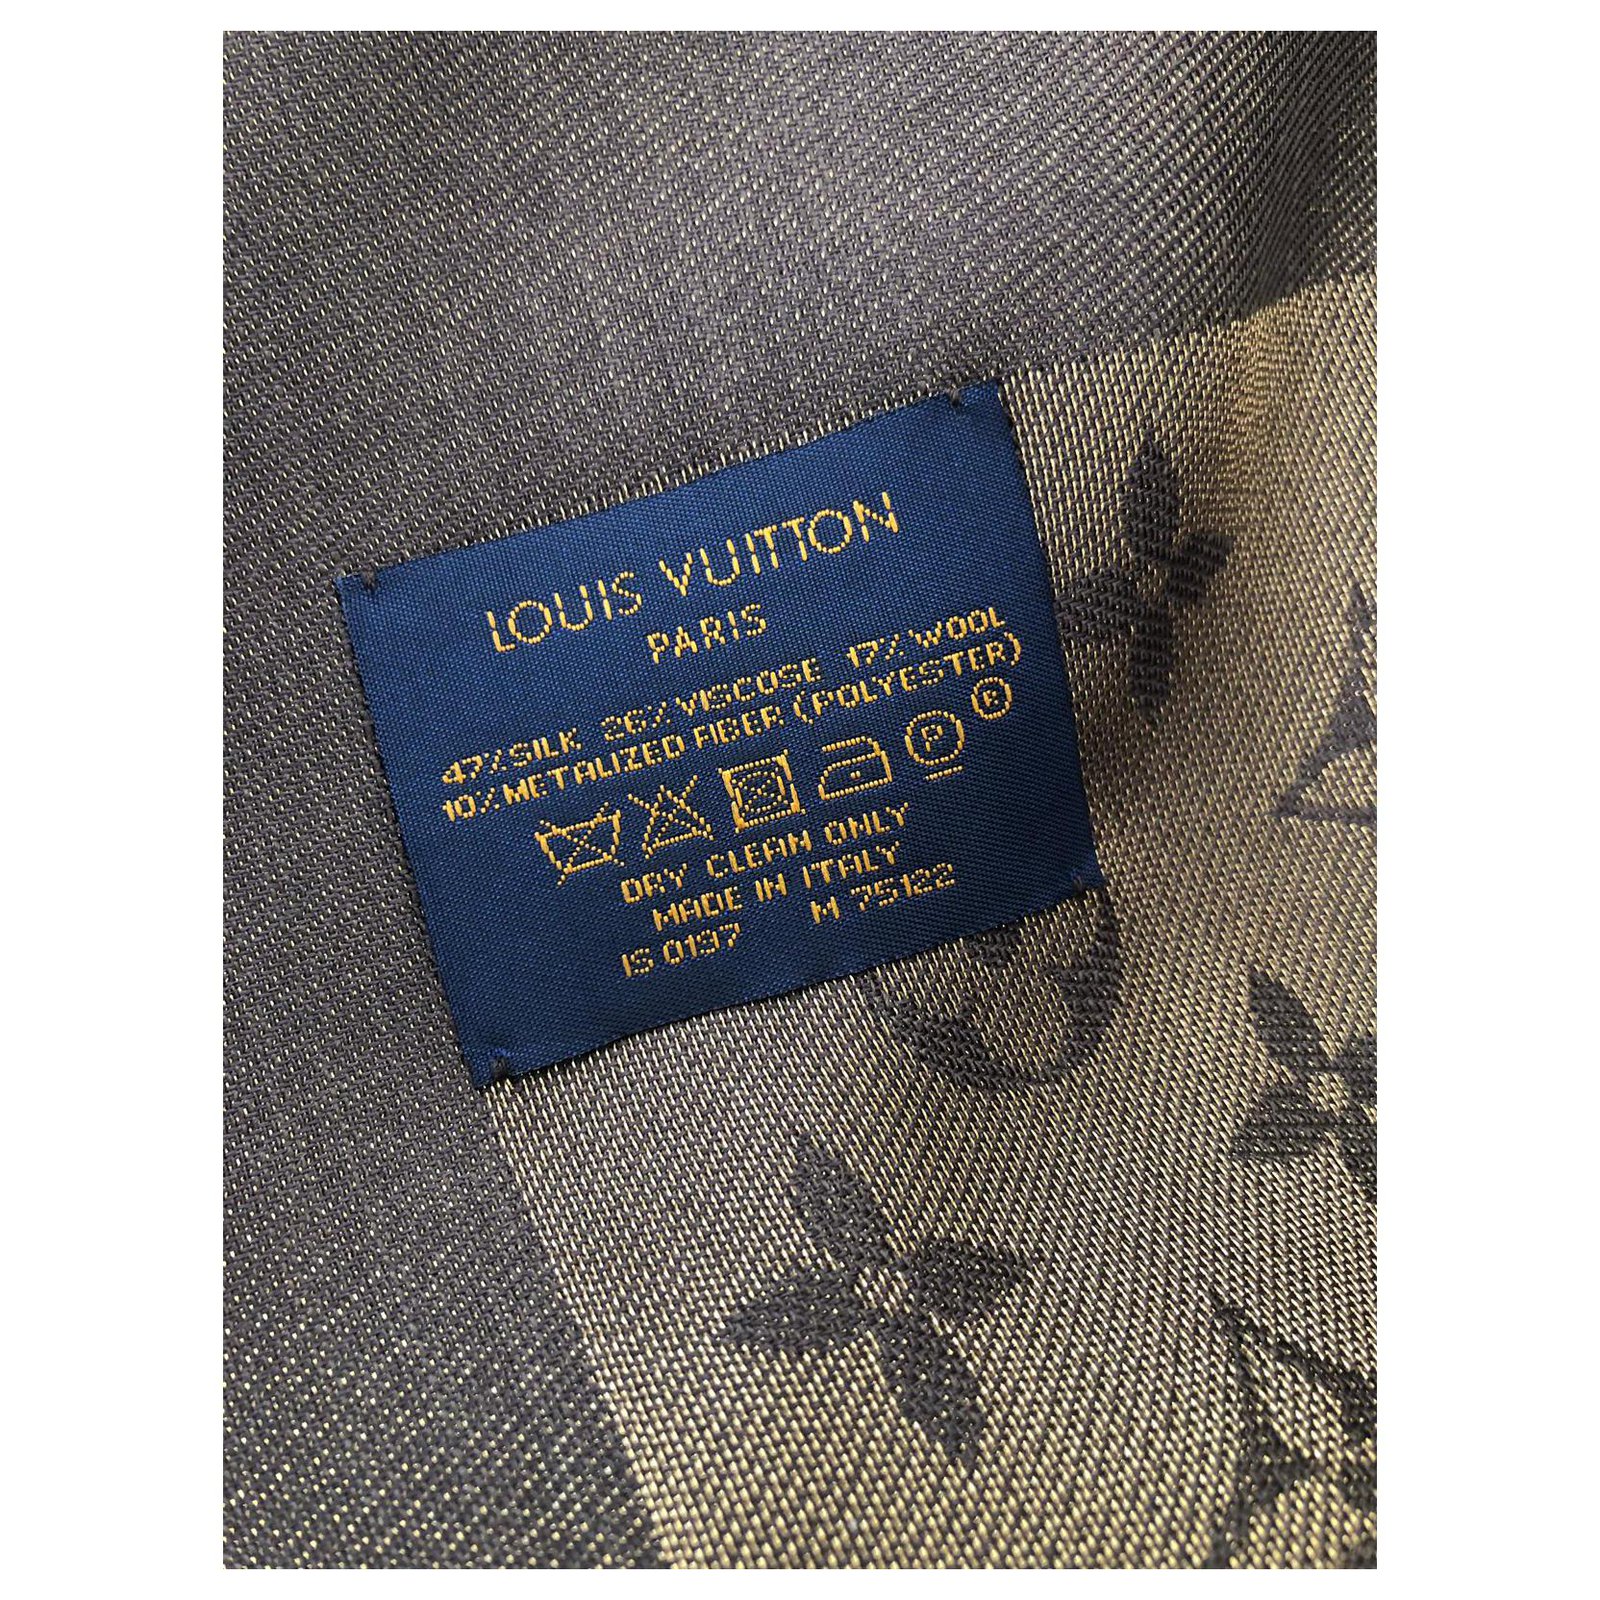 Foulard Louis Vuitton monogram shine Brown Polyester Wool Viscose